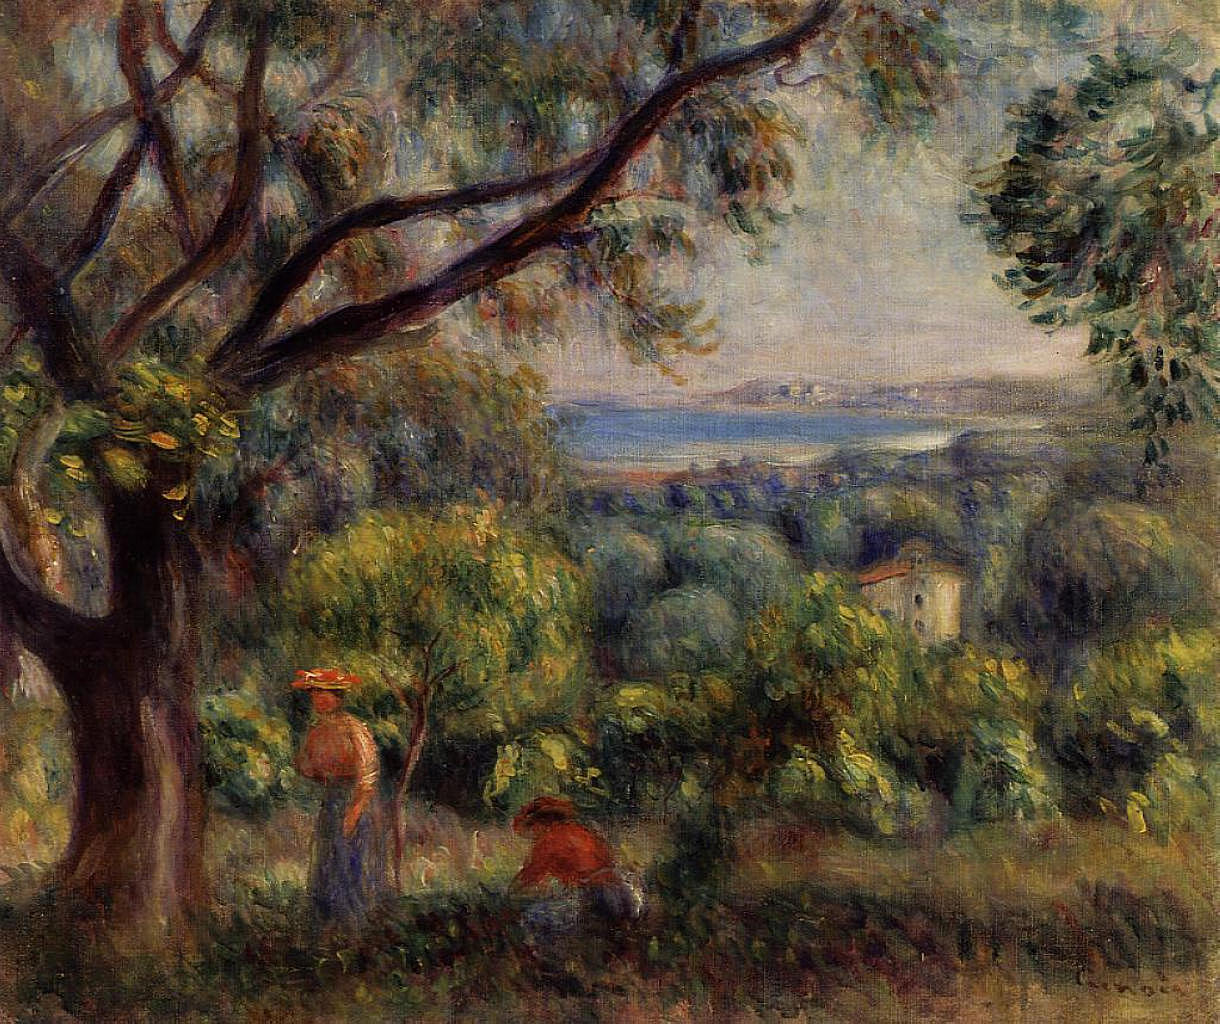 Cagnes Landscape - Pierre-Auguste Renoir painting on canvas